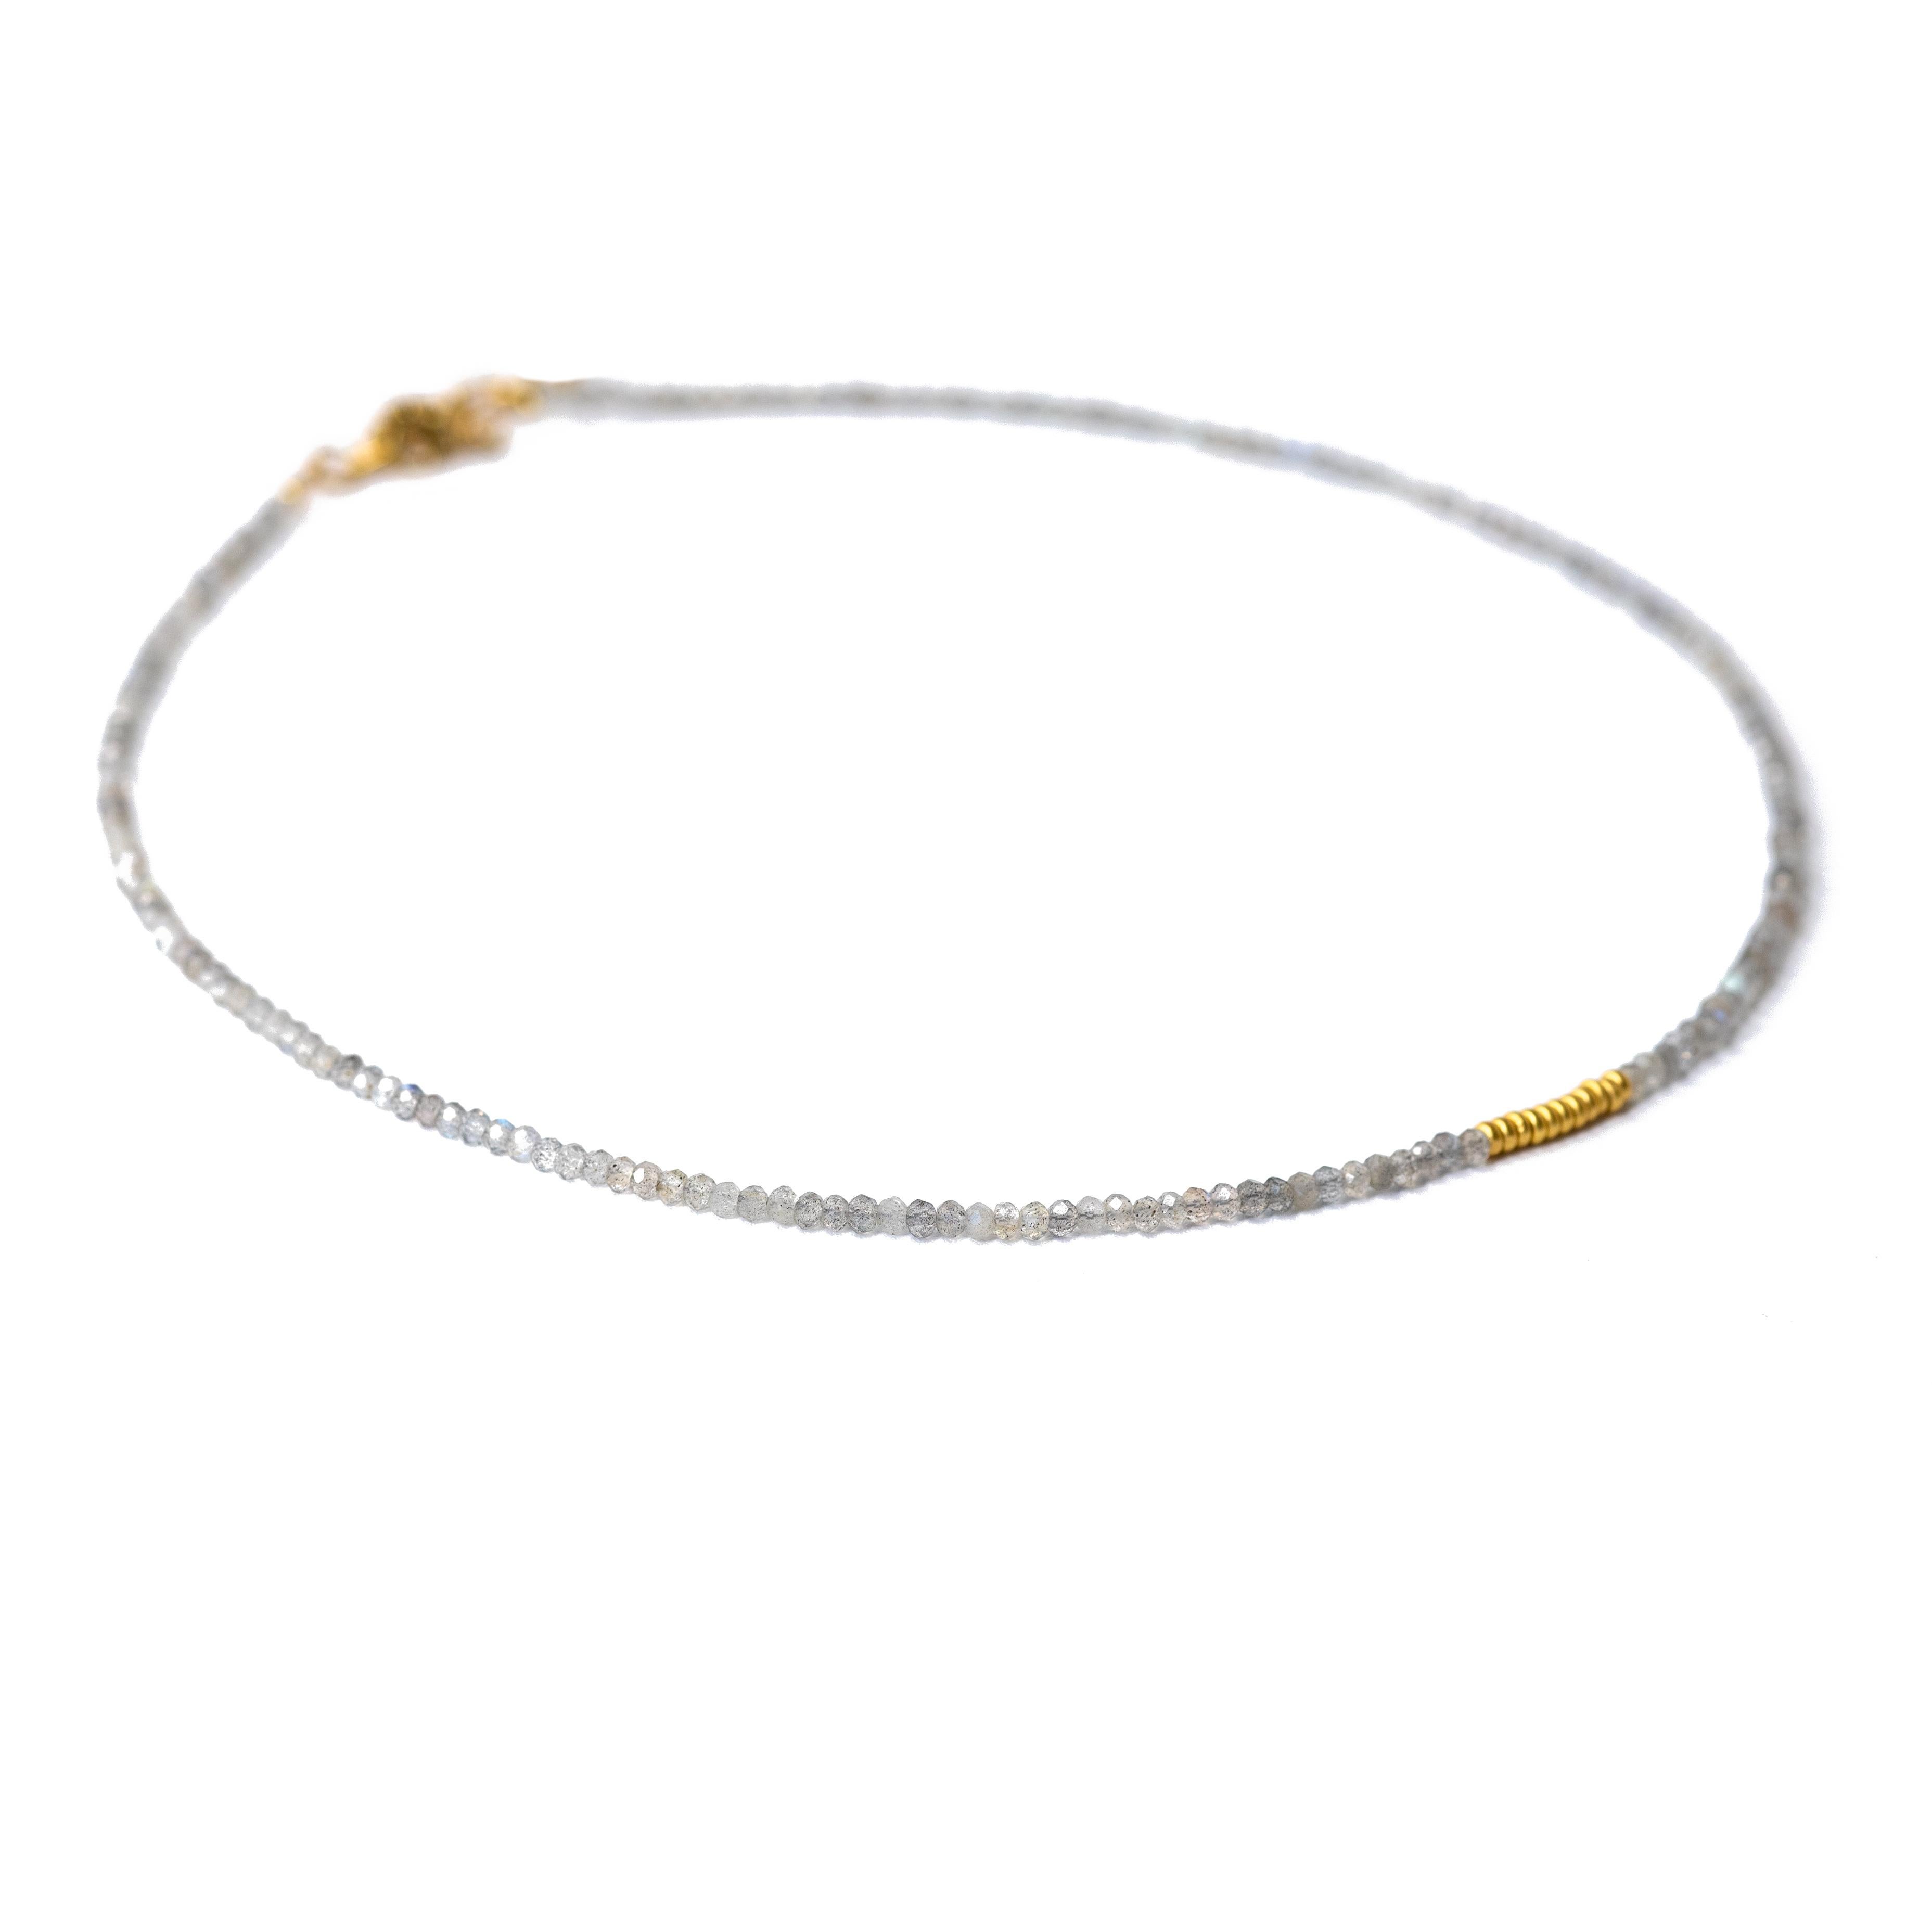 Ce délicat collier de perles d'or en labradorite minuscule est un ajout parfait à toute collection de bijoux. Le tour de cou Shiny Grey est fabriqué avec des perles dorées de haute qualité et comporte une superbe pierre de labradorite qui ajoute une